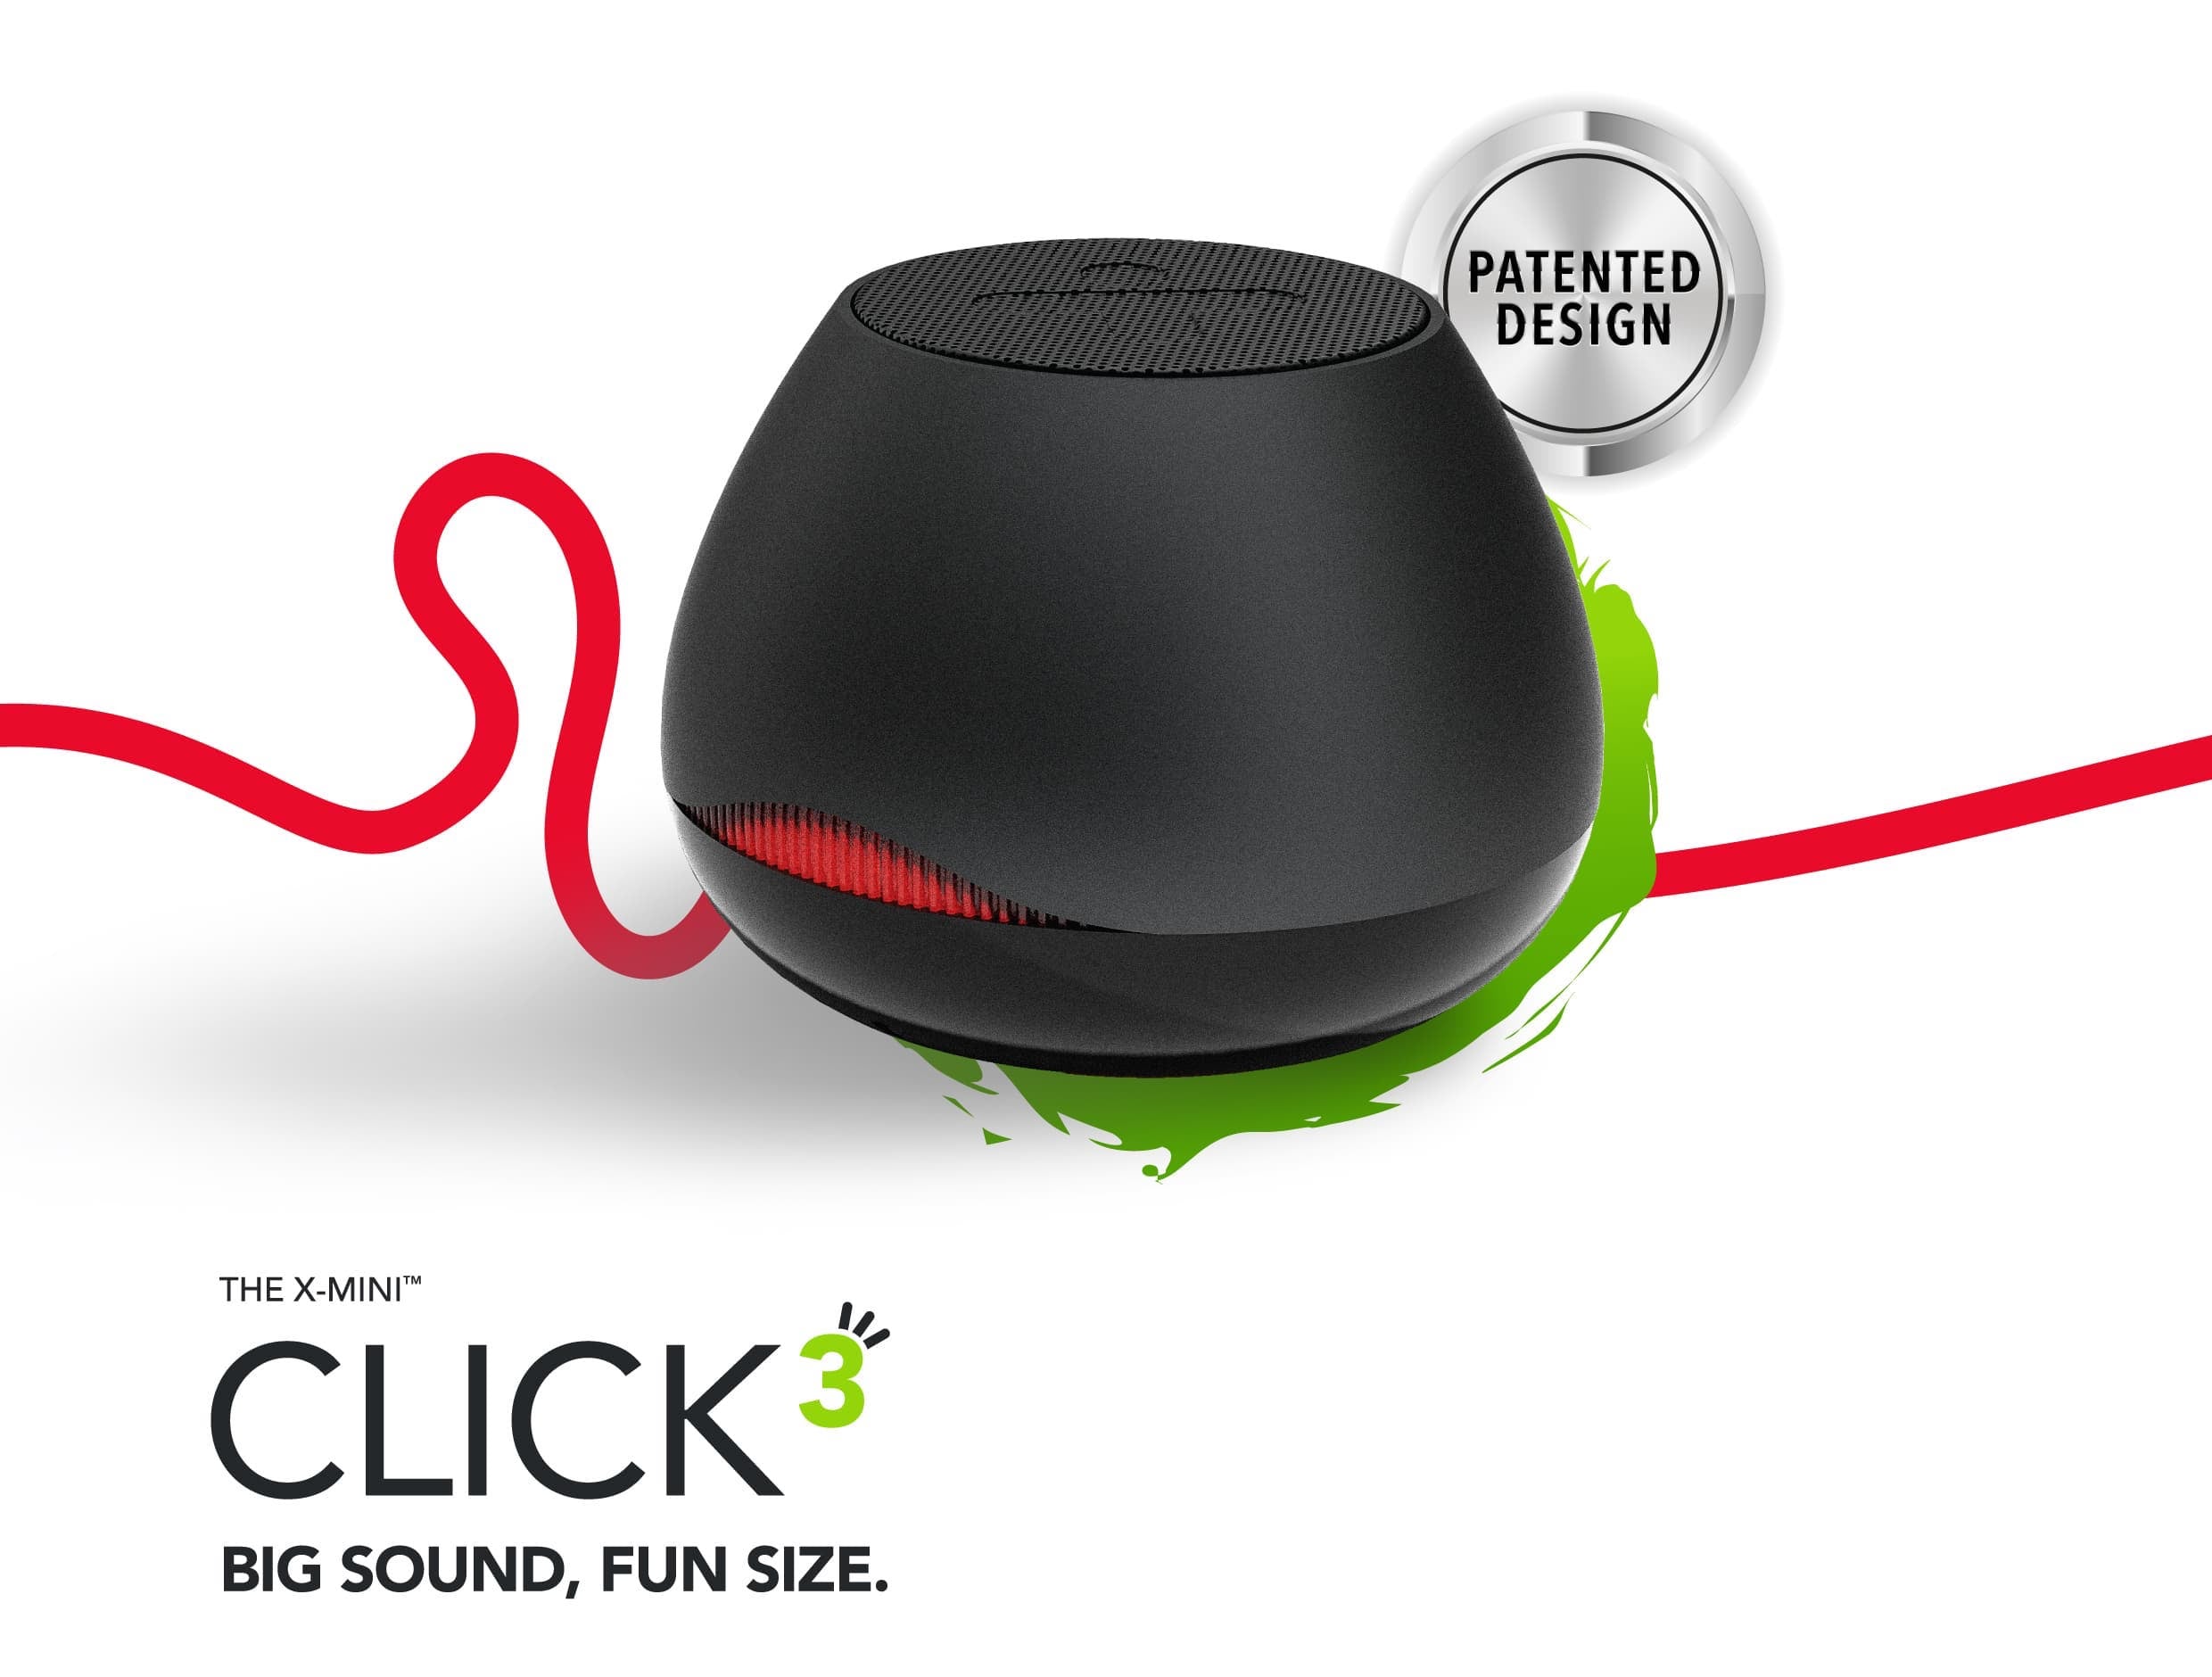 X-mini CLICK 3 Bluetooth Speaker